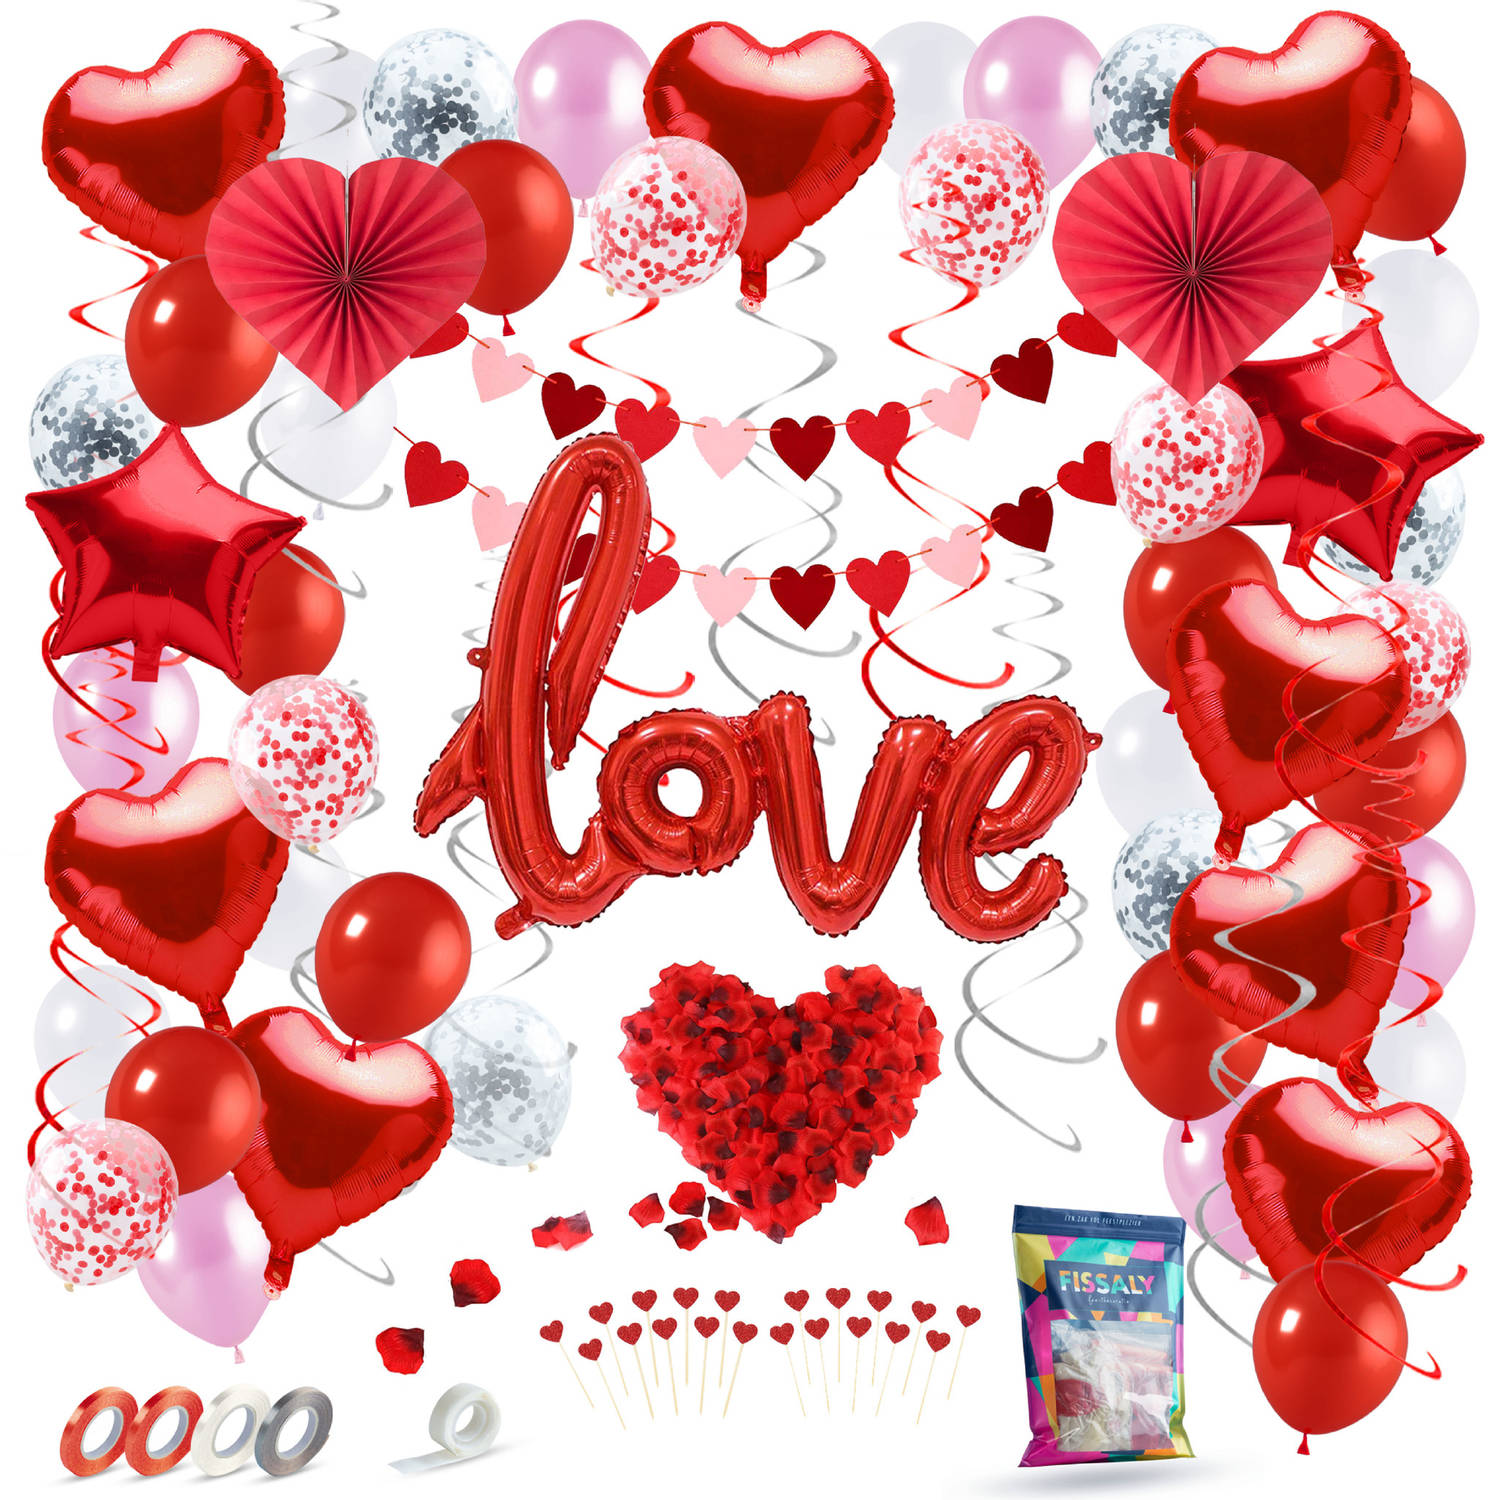 Fissaly® 89 Stuks Liefde & Hartjes Decoratie Set Helium & Papieren Confetti Ballonnen en Lint – I Love you - Cadeautje - Man & Vouw - Hem & Haar - Rood - Valentijn - Moederdag